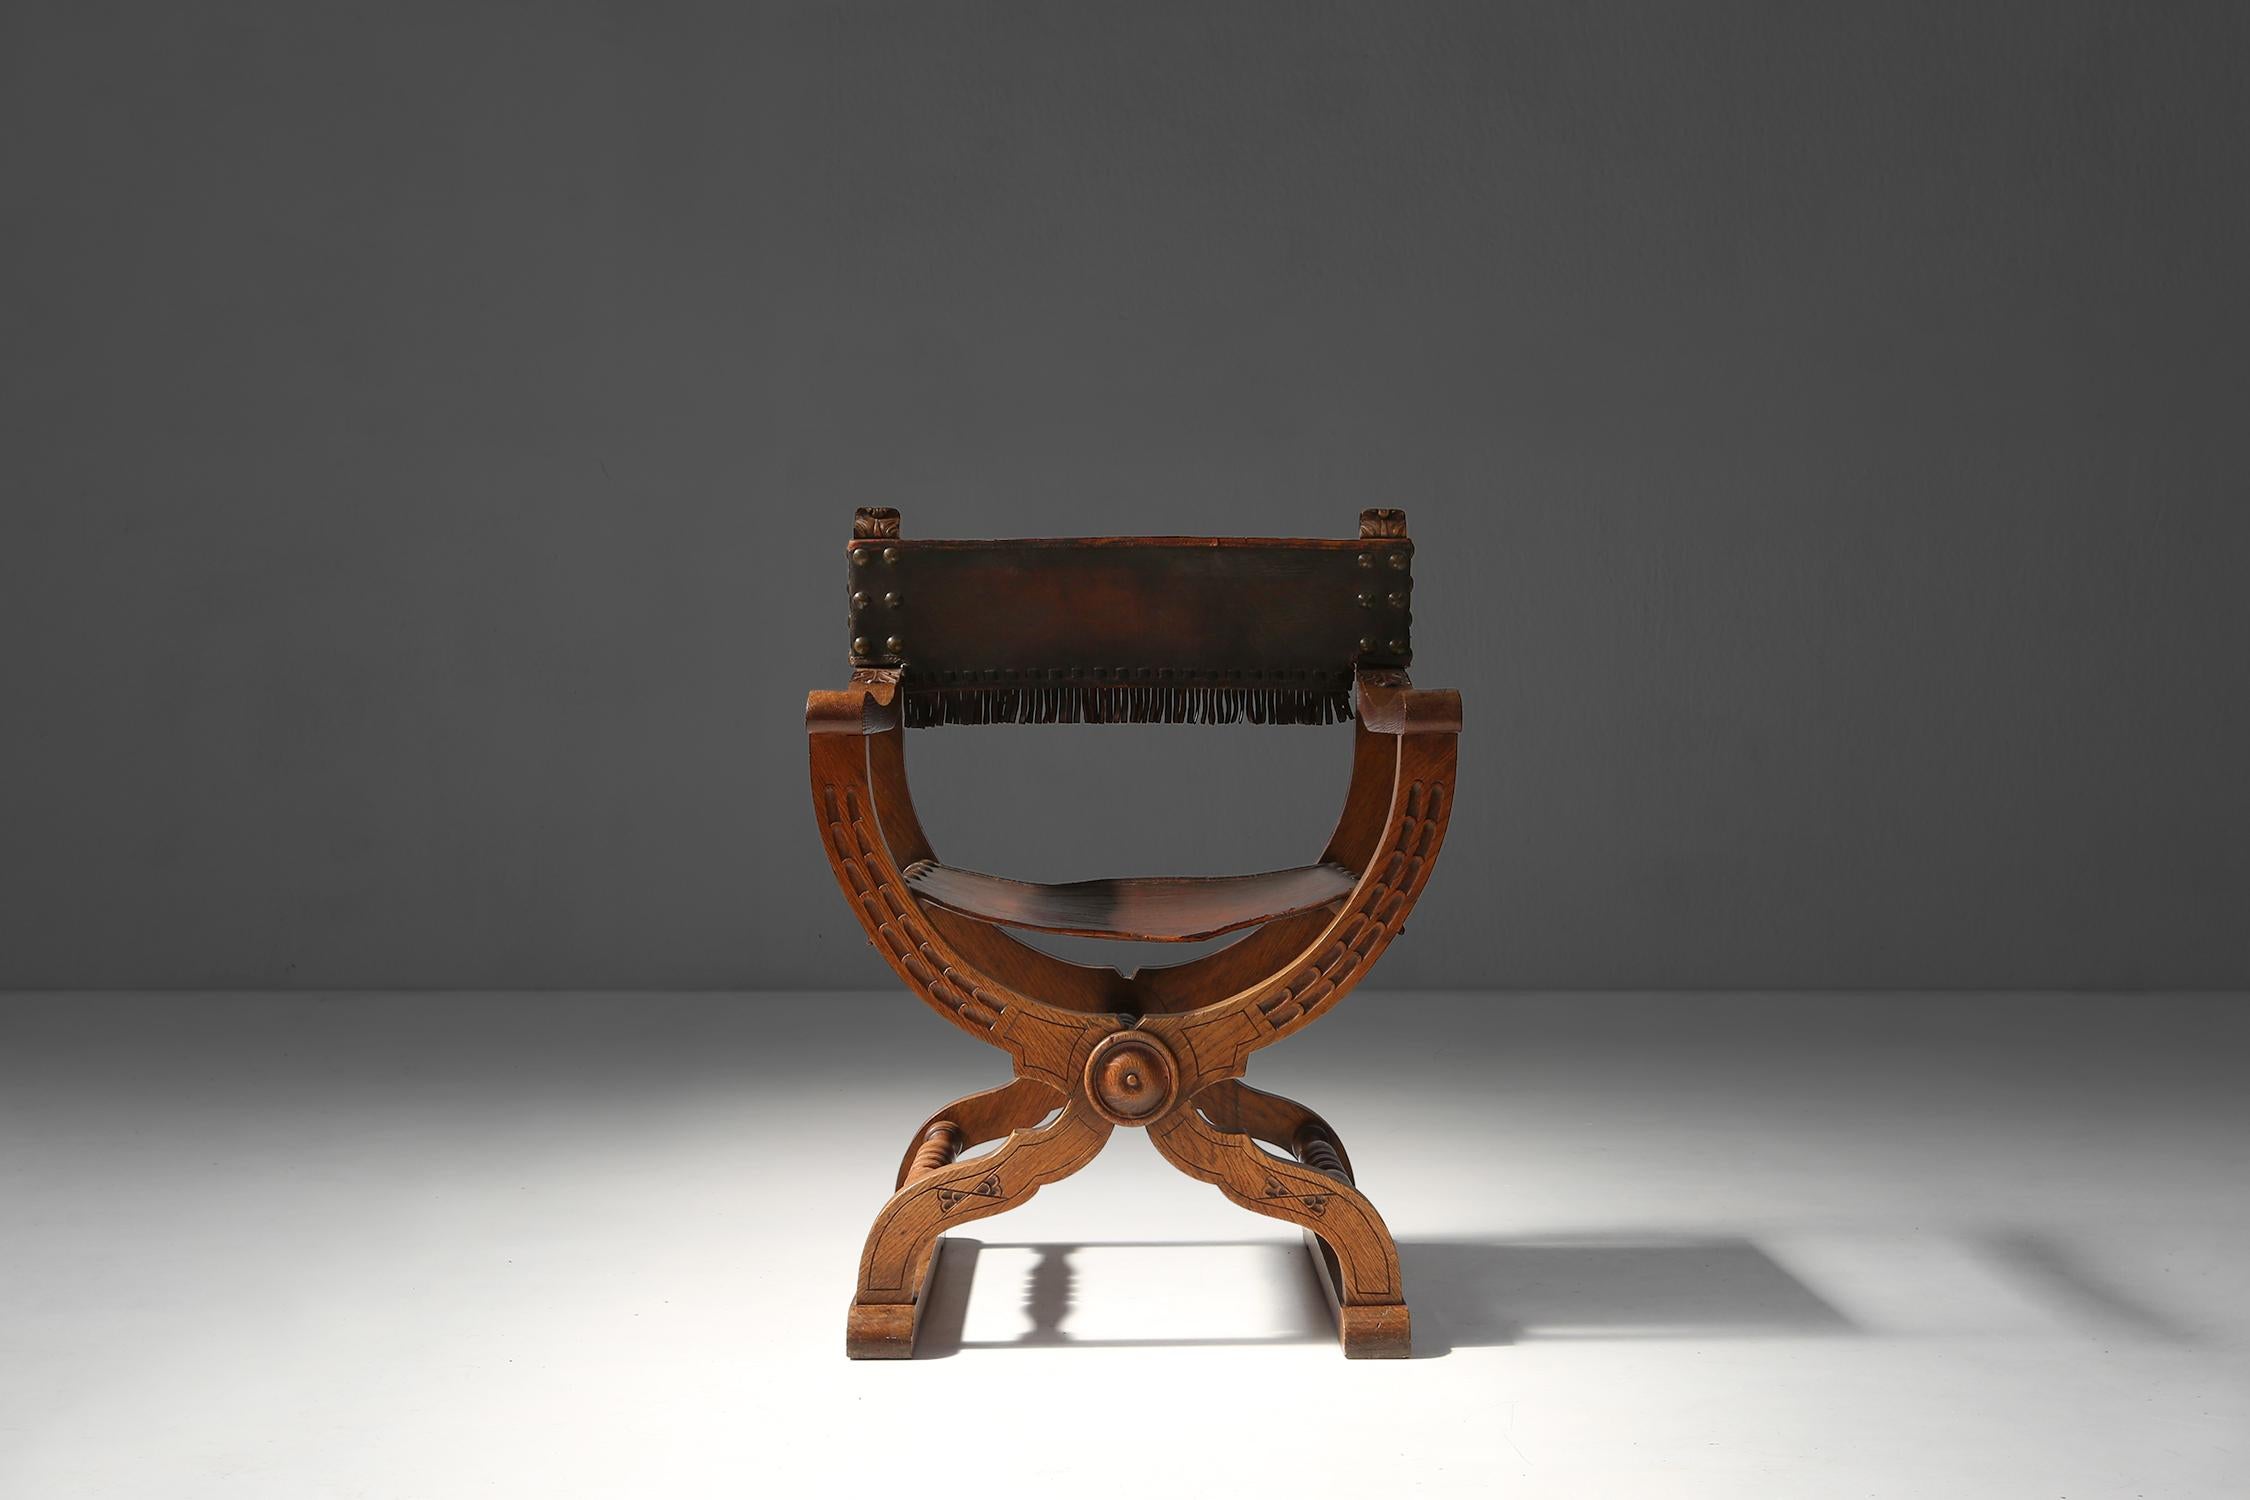 Dieser Neo-Renaissance-Thronsessel ist ein einzigartiges und elegantes Möbelstück, das jeden Raum schmücken kann. Dieser Stuhl wurde um 1890 in der Zeit der Neo-Renaissance hergestellt, die sich durch die Verwendung klassischer Elemente und